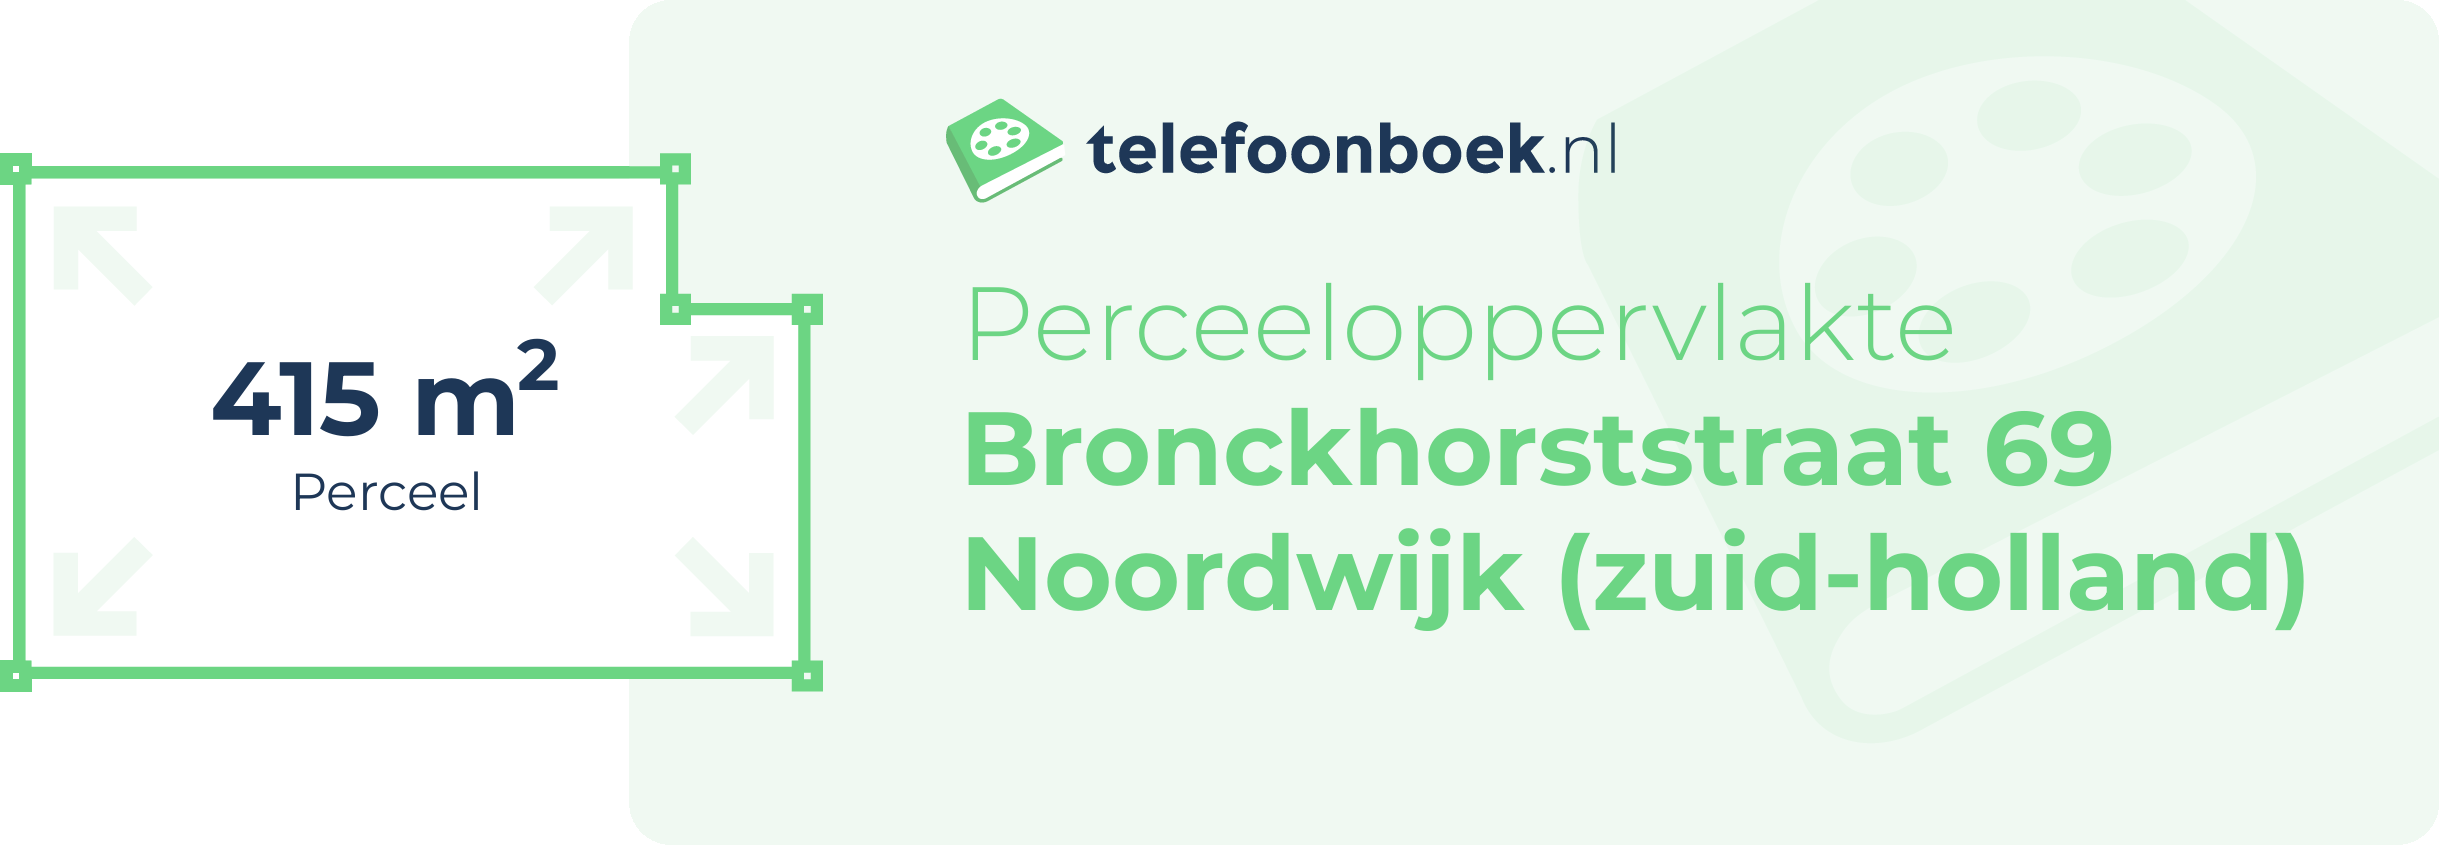 Perceeloppervlakte Bronckhorststraat 69 Noordwijk (Zuid-Holland)